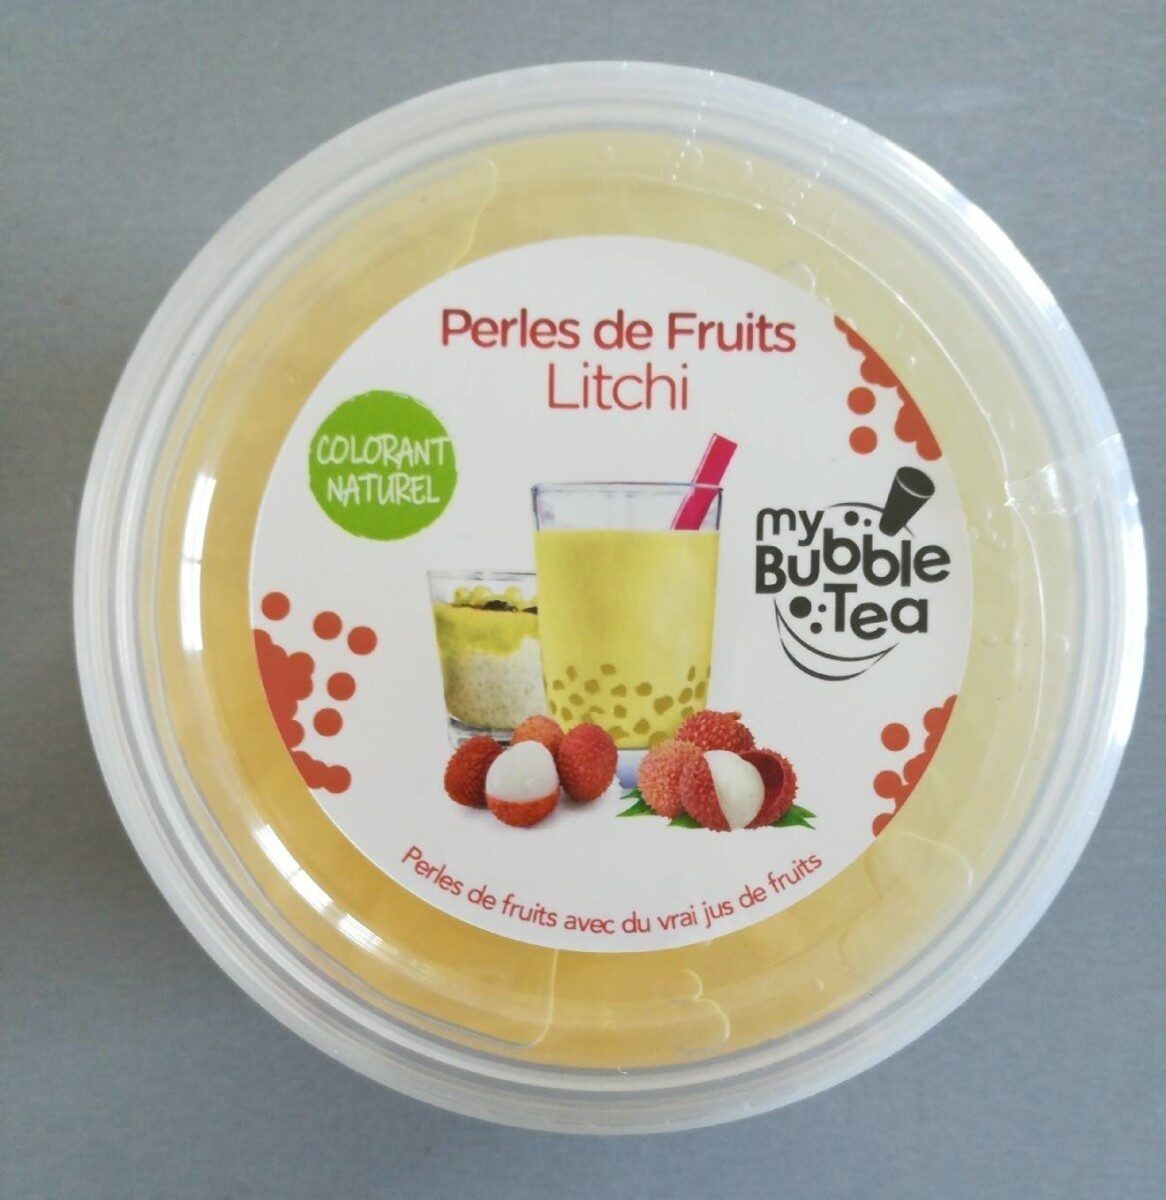 Perles de fruits Litchi - Product - fr